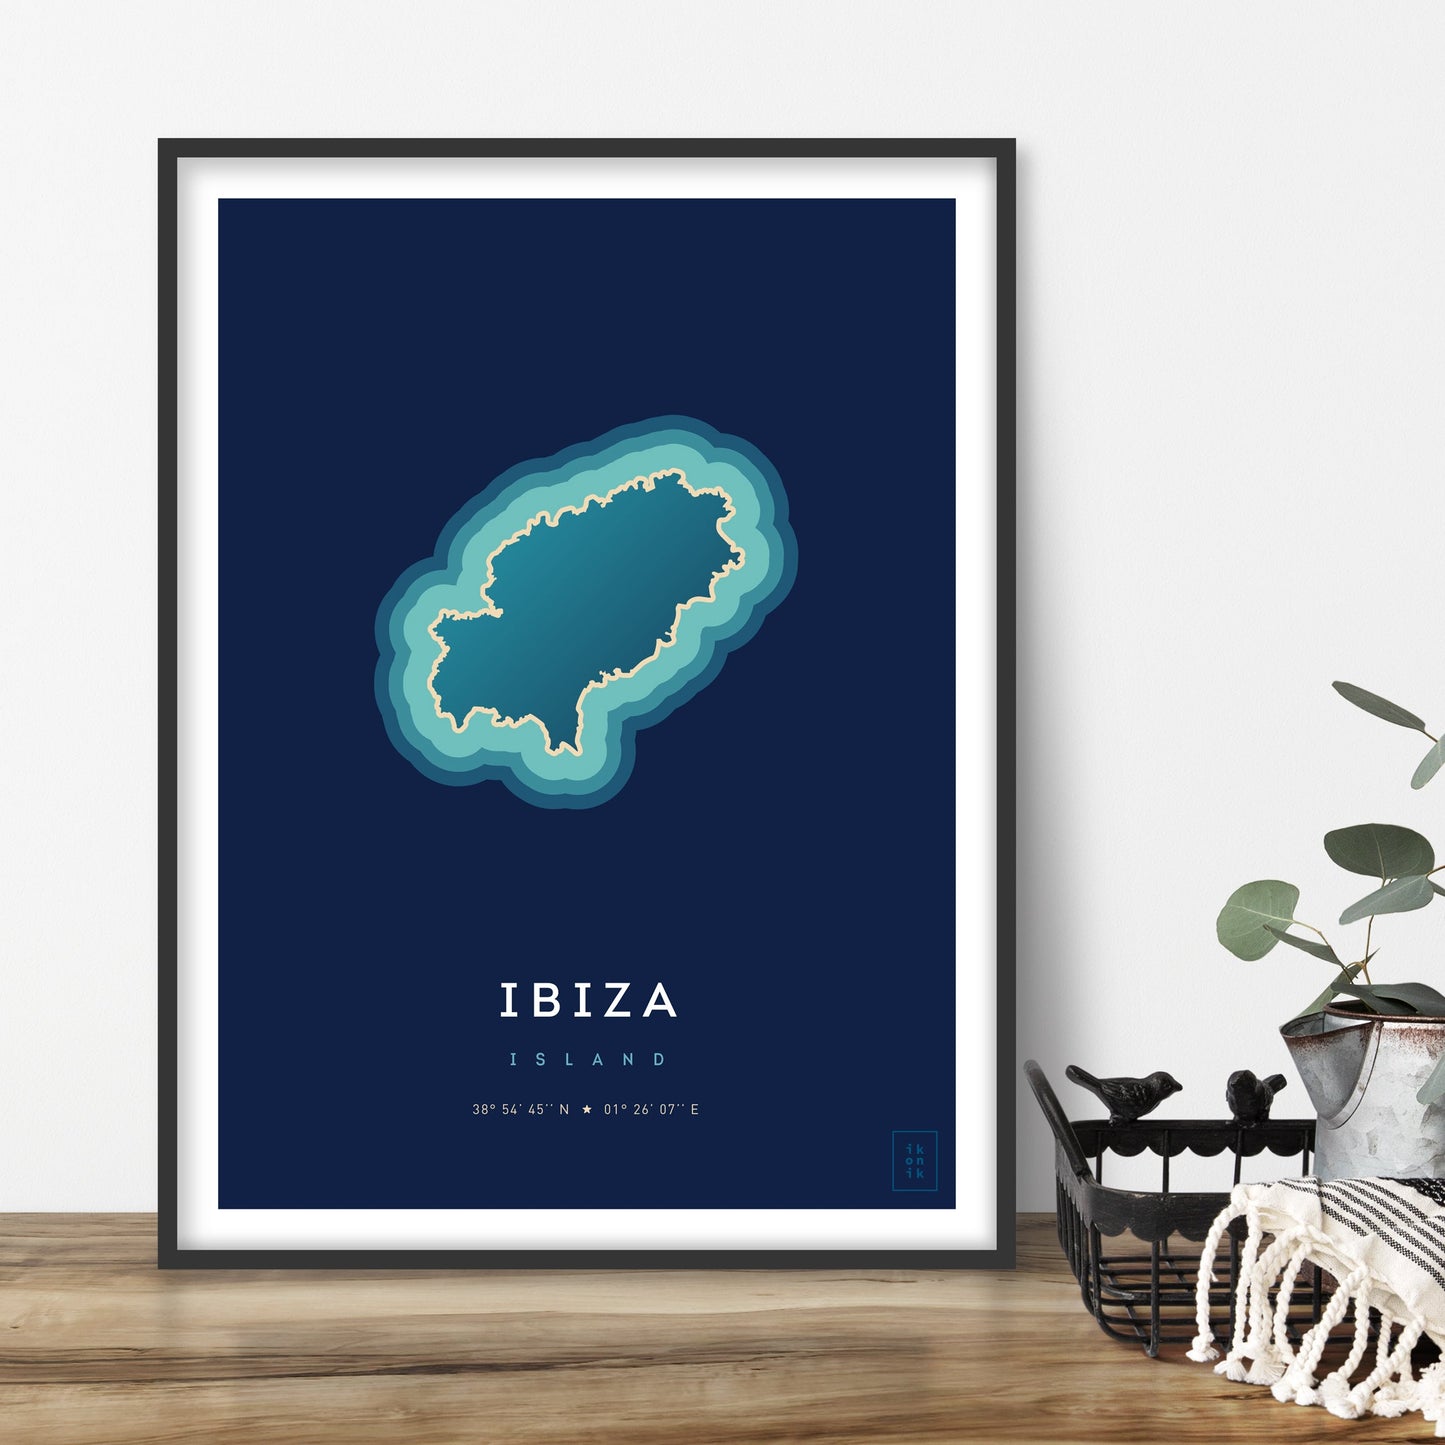 Affiche de l'île d'Ibiza